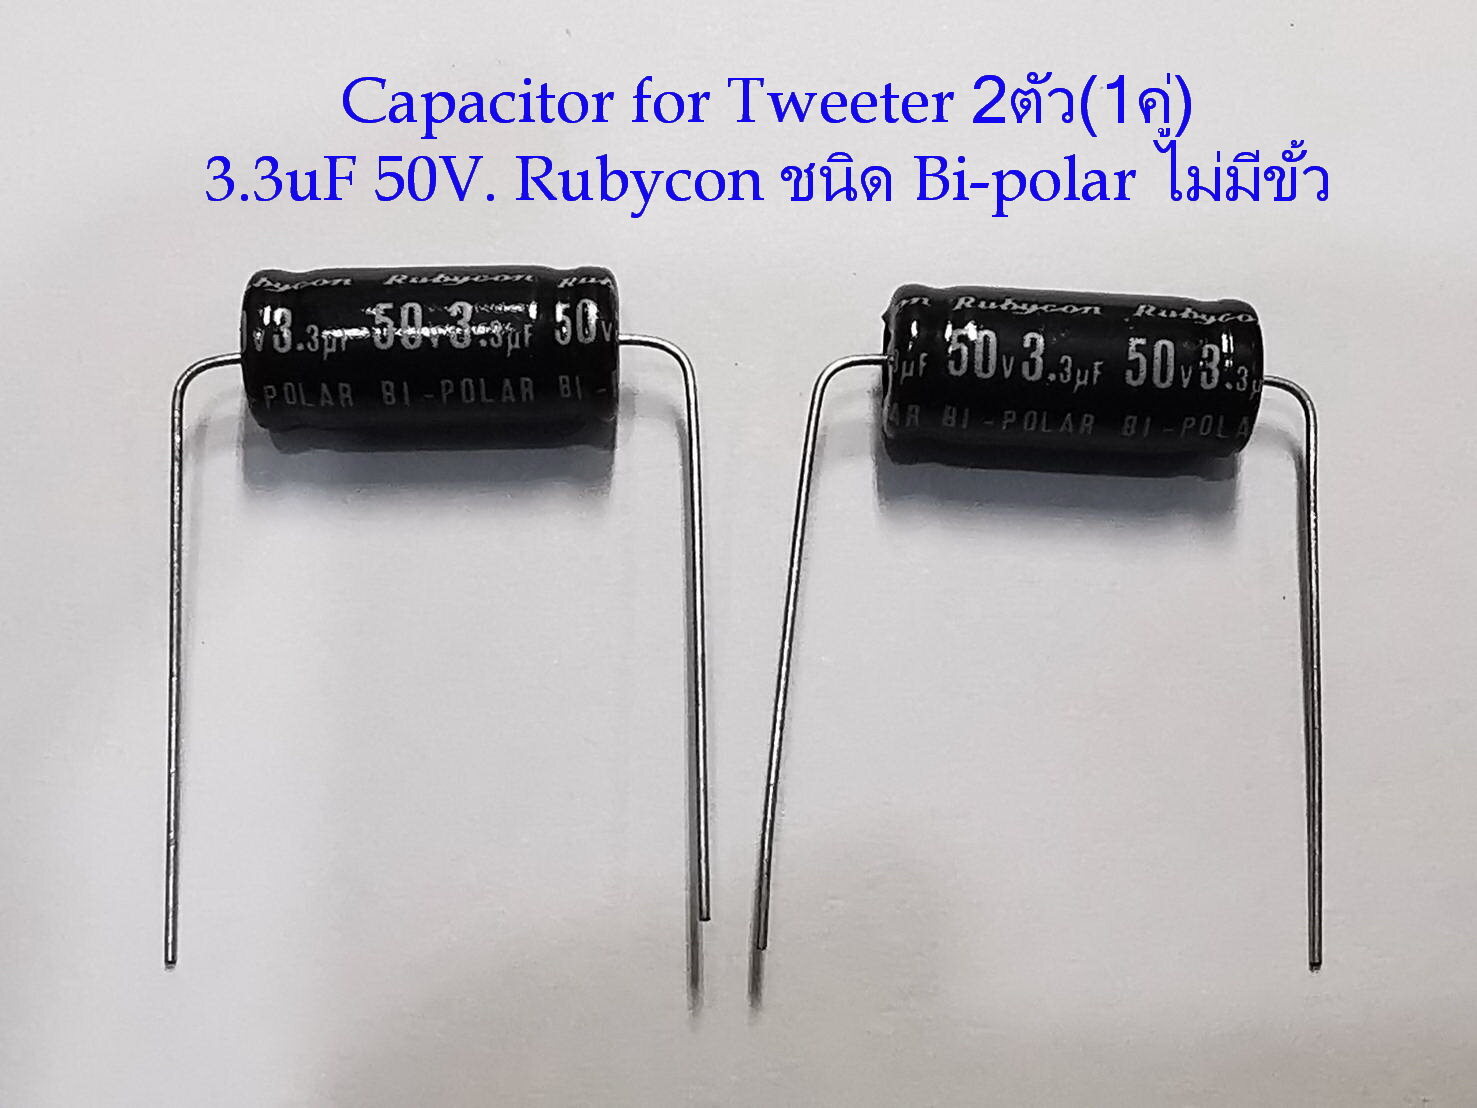 2ตัว(1คู่) Capacitor 3.3uf.50V./4uF50V./ 3.3uF100V./8uF50V.  สำหรับลำโพงเสียงแหลม-กลาง ชนิด Bi-Polar ไม่มีขั้ว